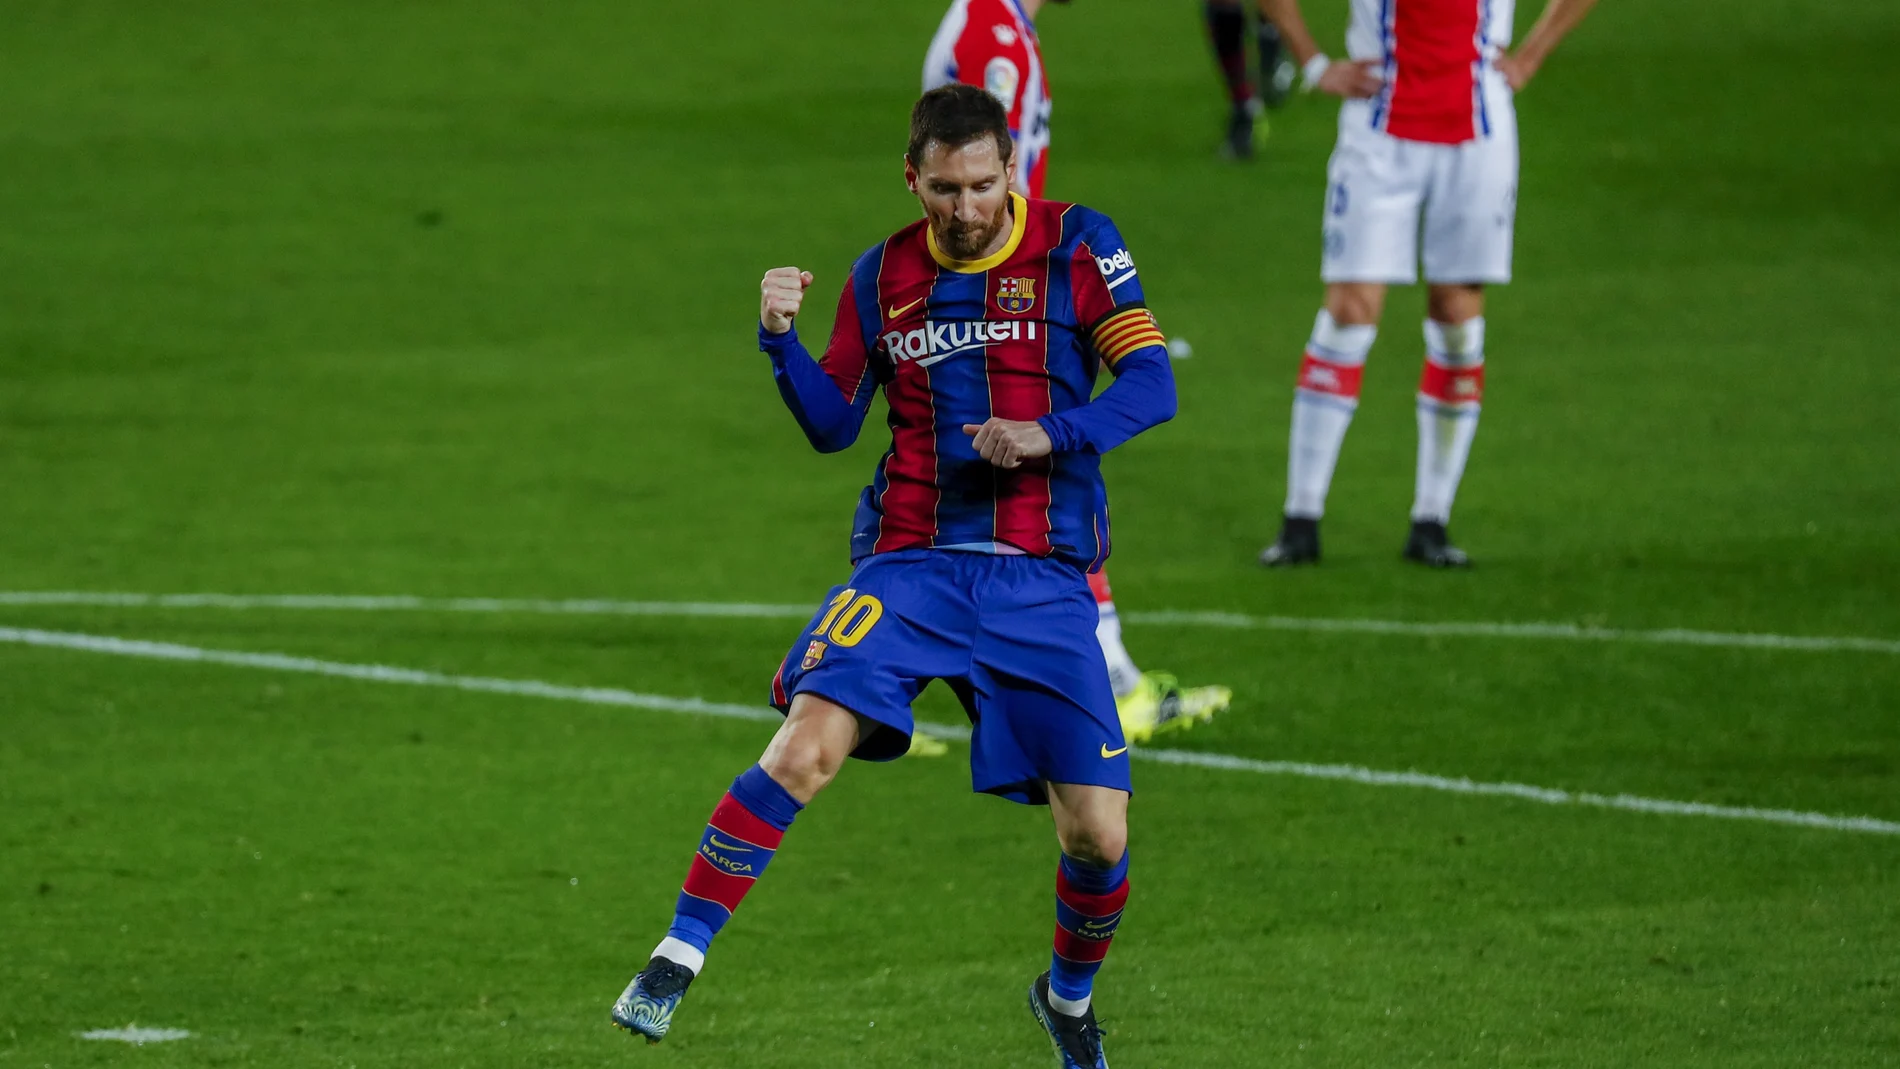 Messi celebra uno de los dos goles que marcó al Alavés